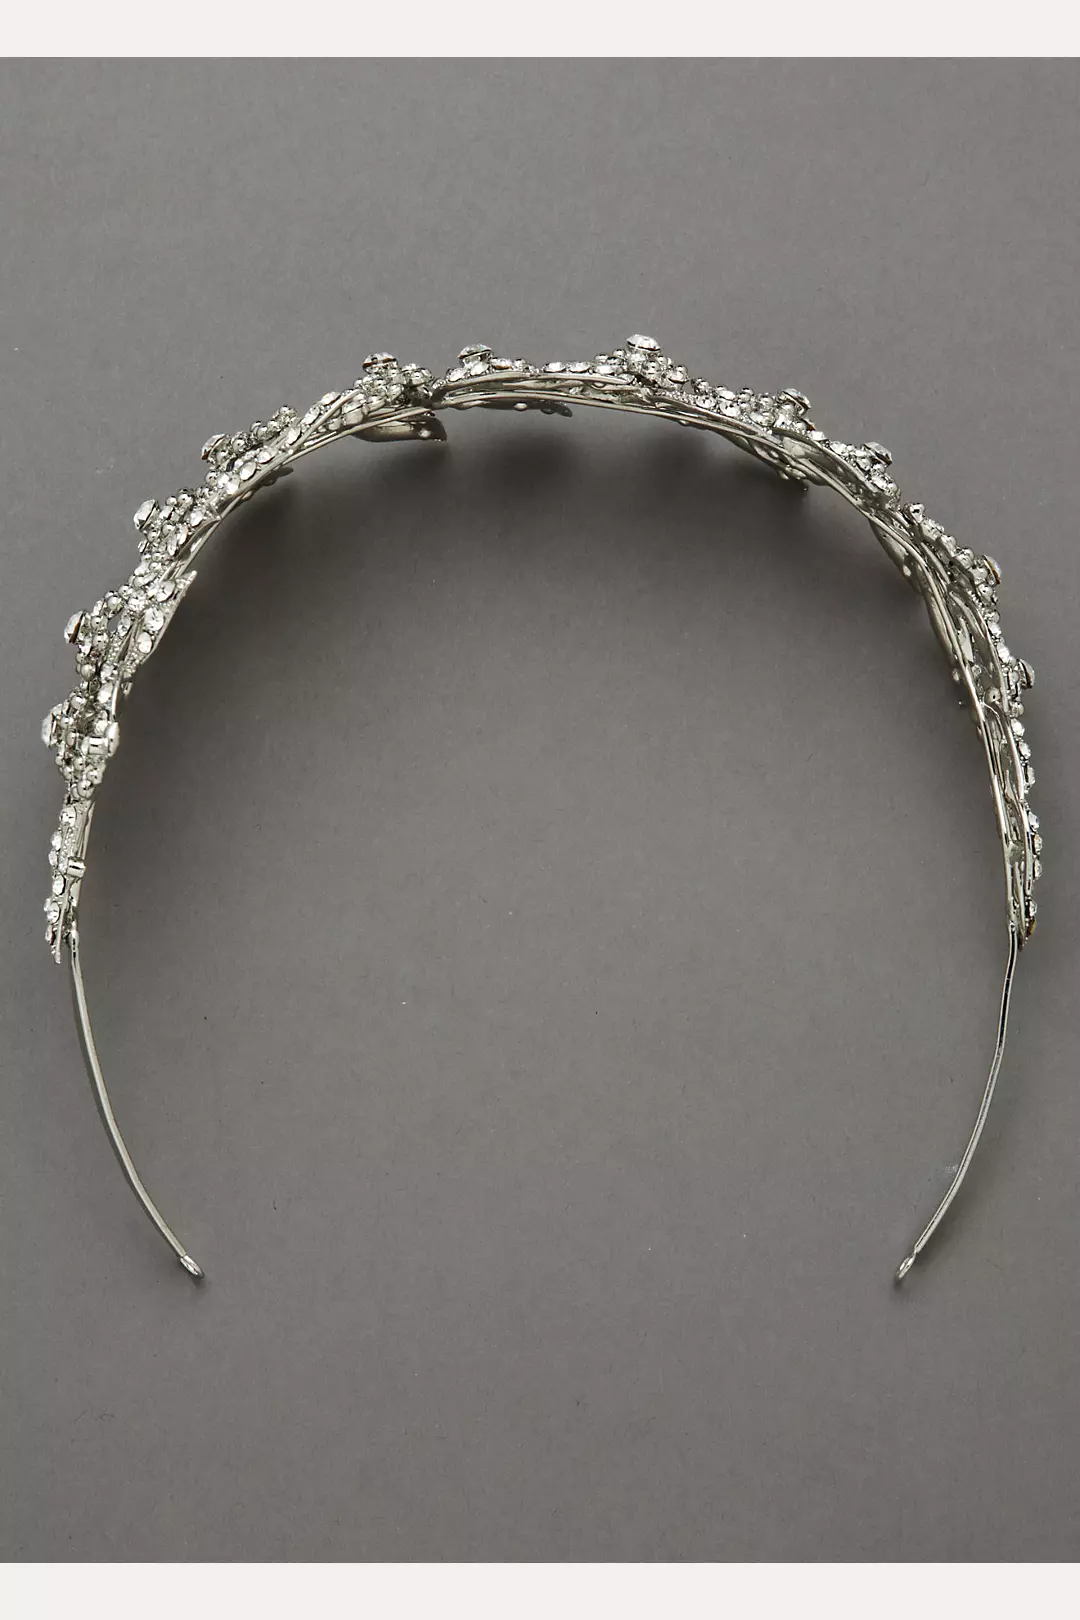 Oleg Cassini Pointed Petal Crystal Headband Image 3